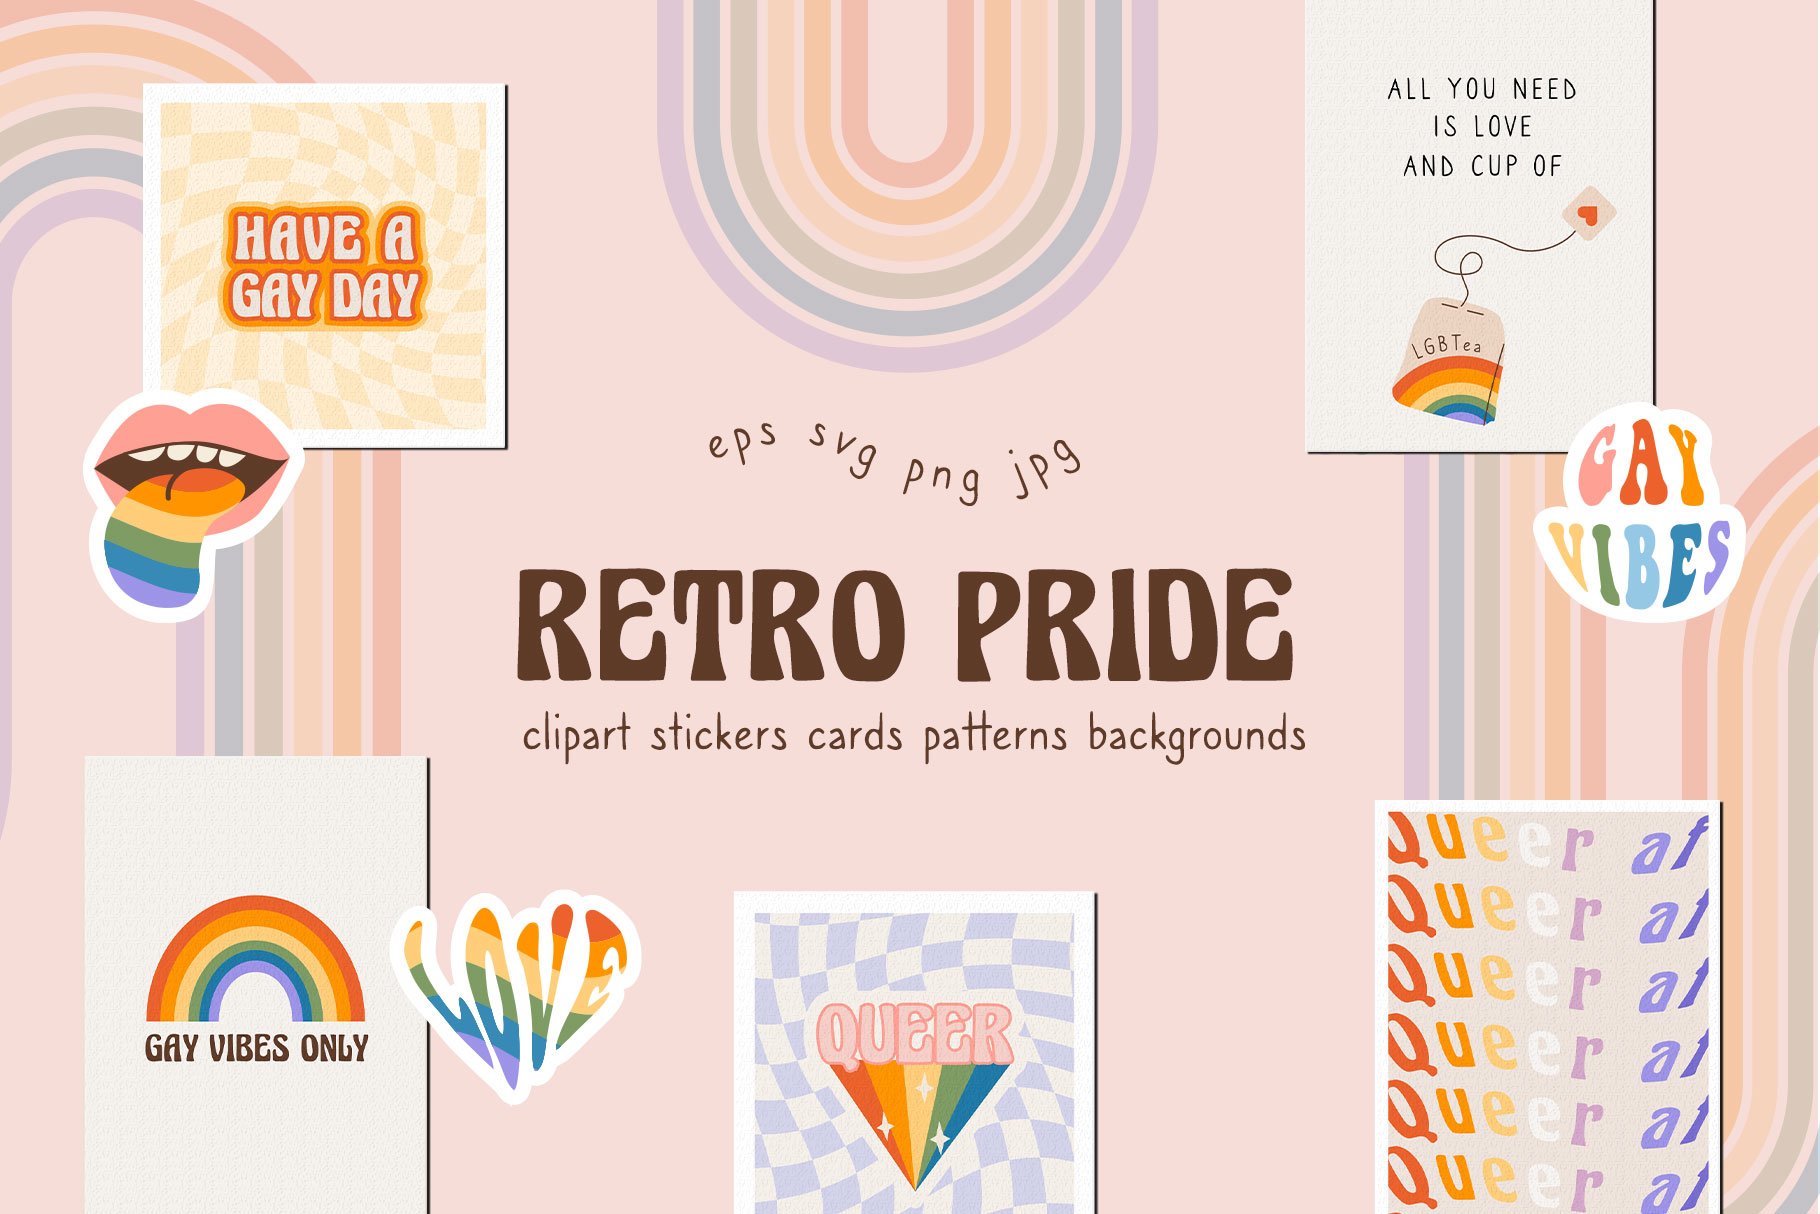 Retro Pride Collection cover image.